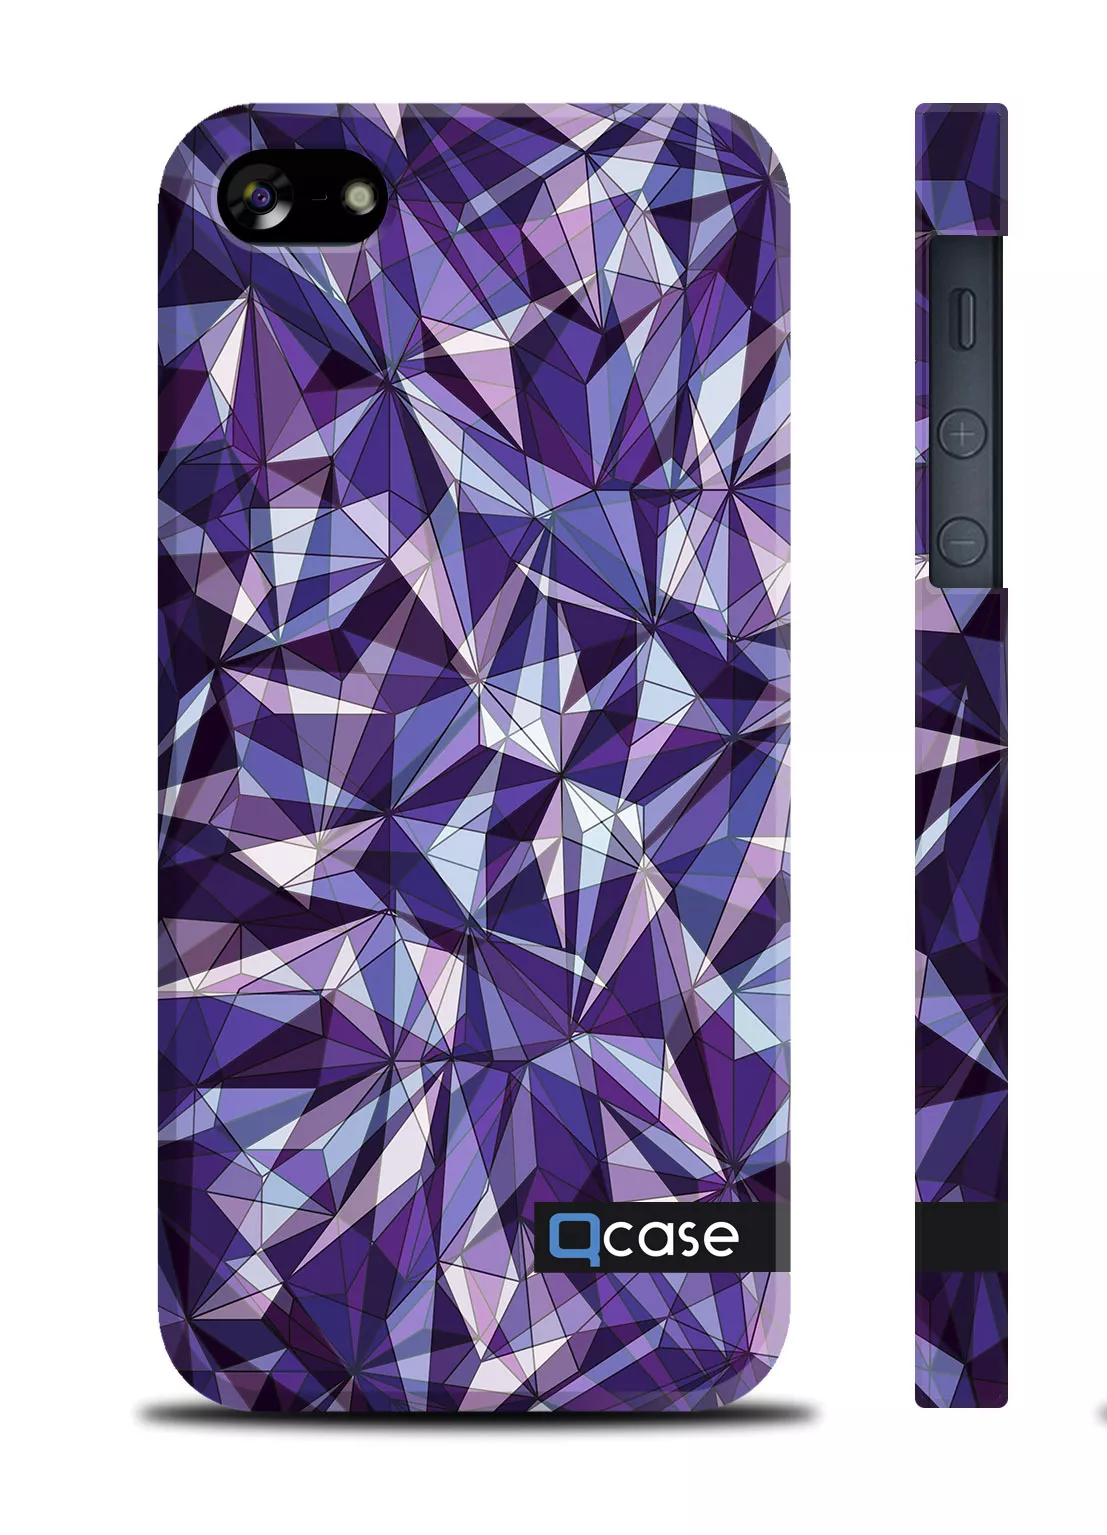 Чехол с дизайном Е.Мамаева для Айфон 5/5S - E.Mamaeva (Violet Diamonds) 